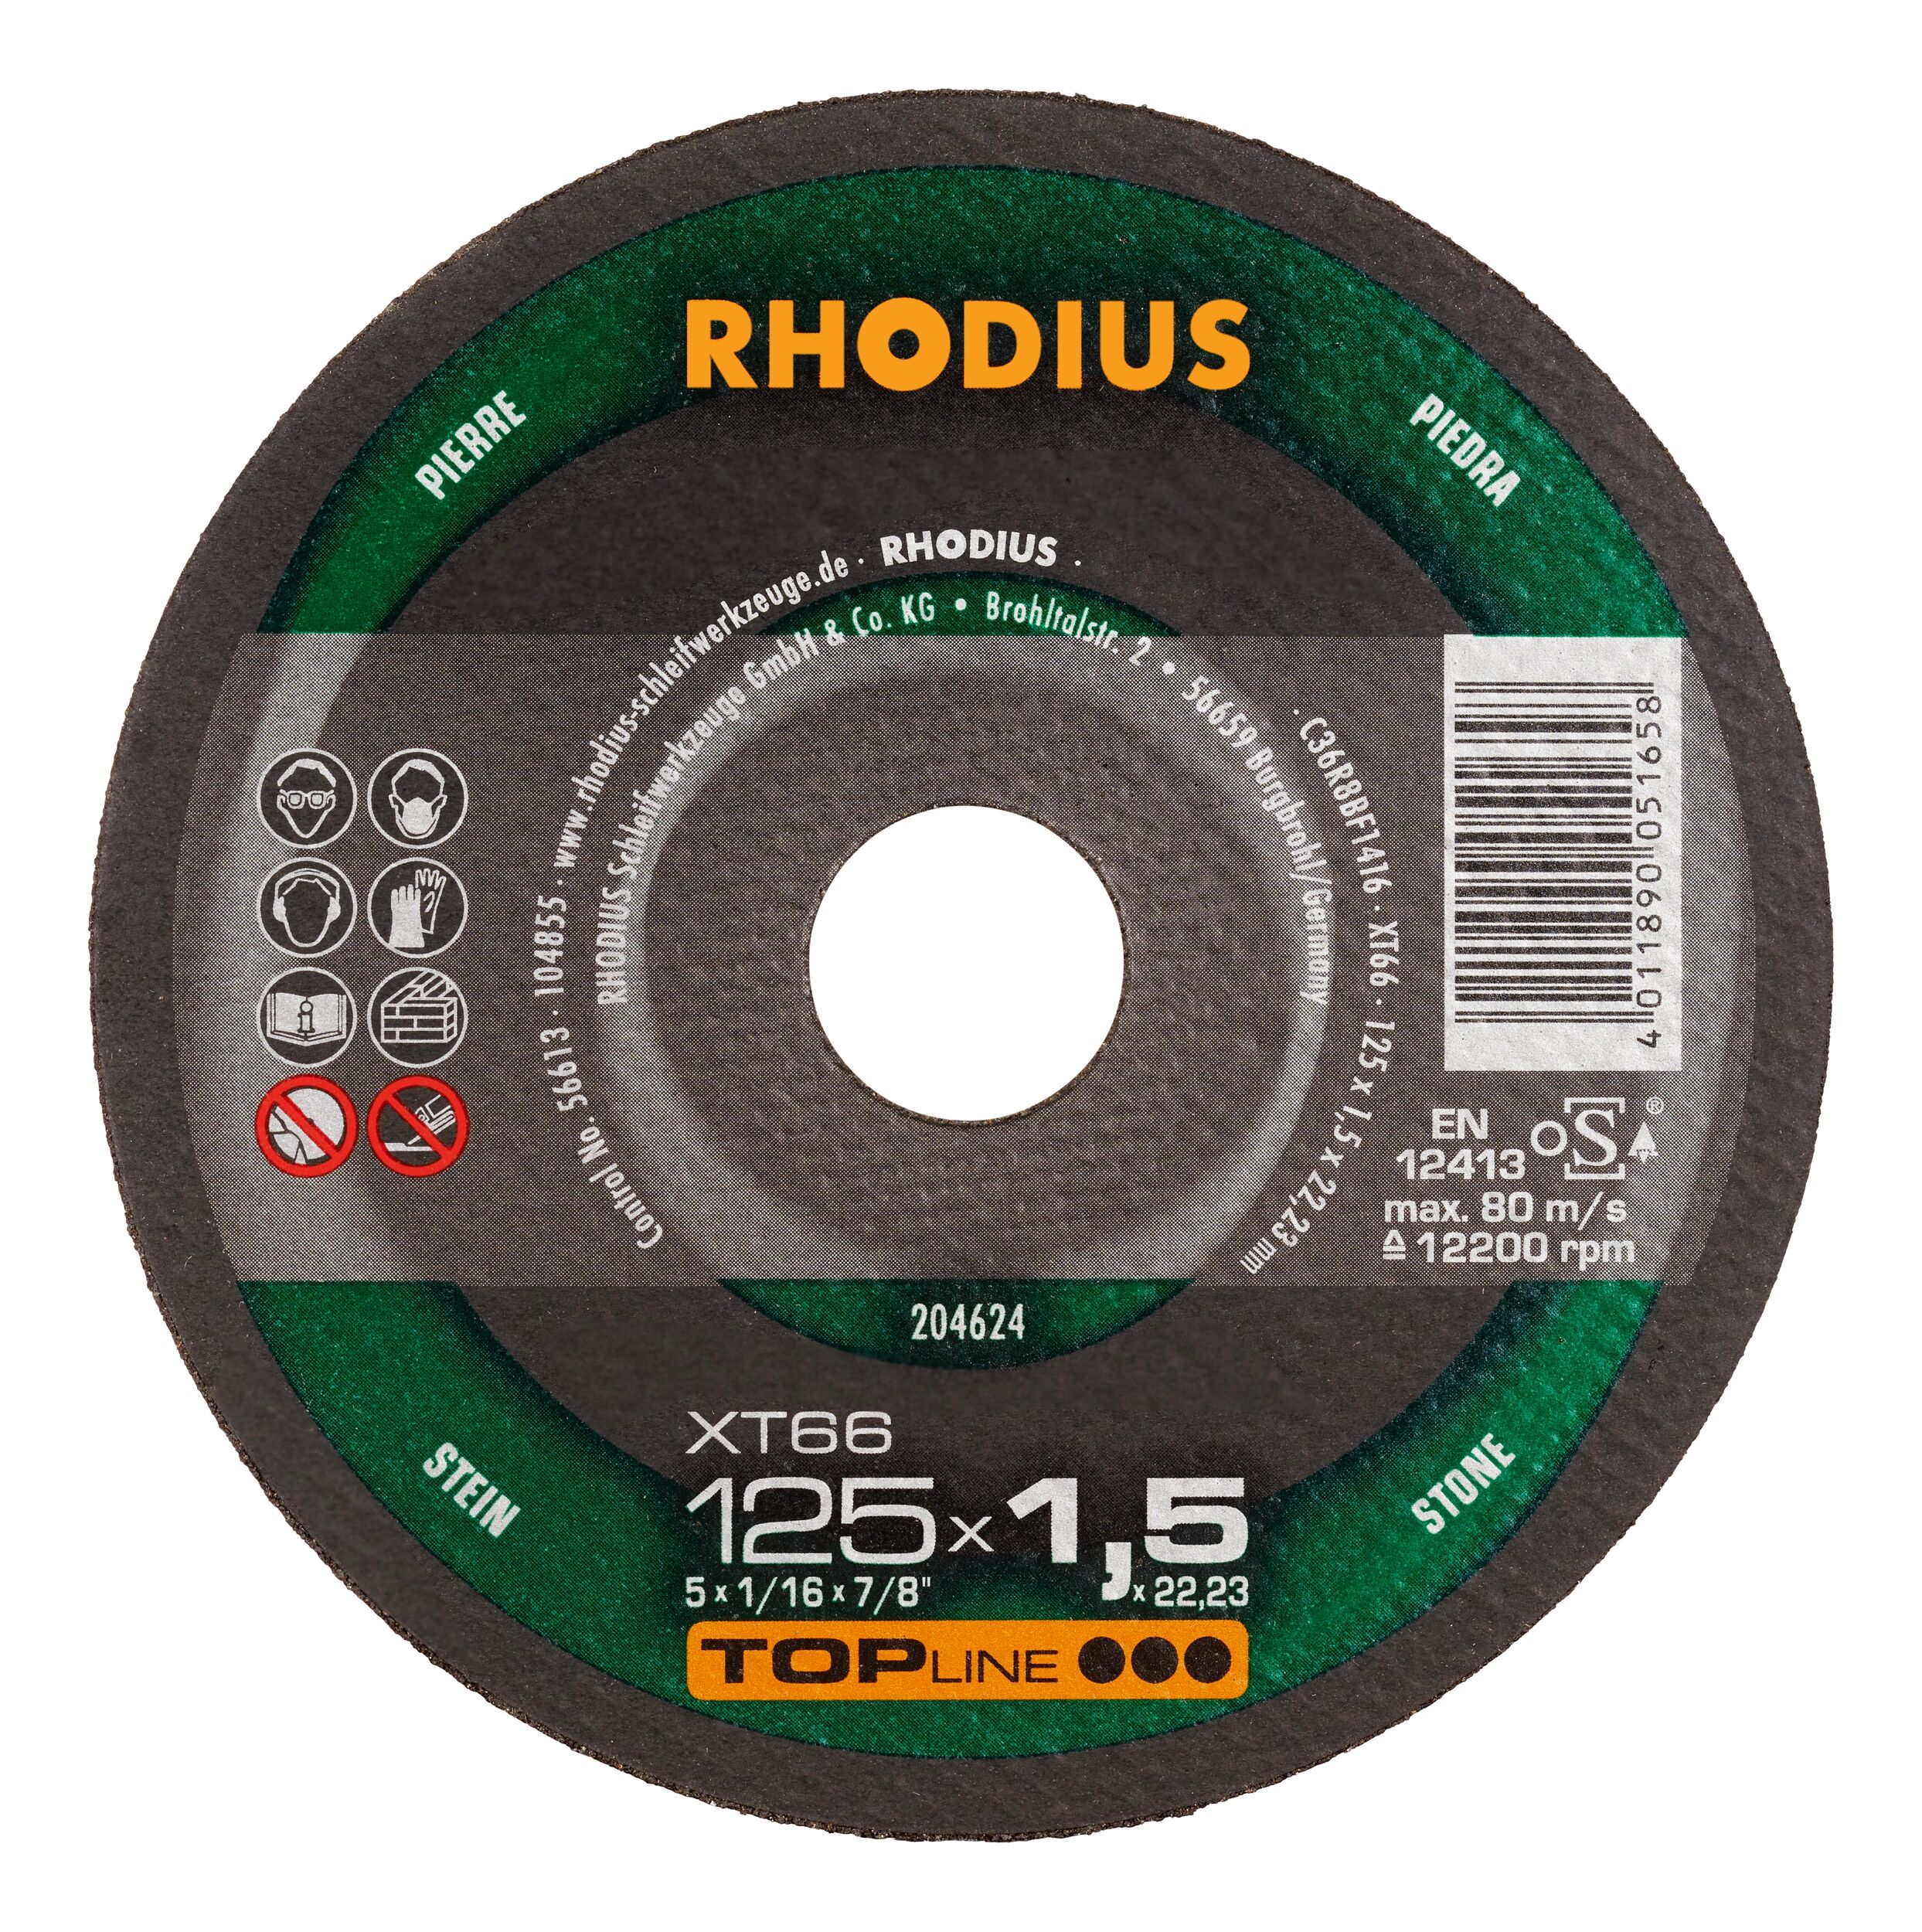 Rhodius DG15 115 x 10,0 x 1,4 x 22,23 mm Diamanttrennscheibe ideal für Fliesen